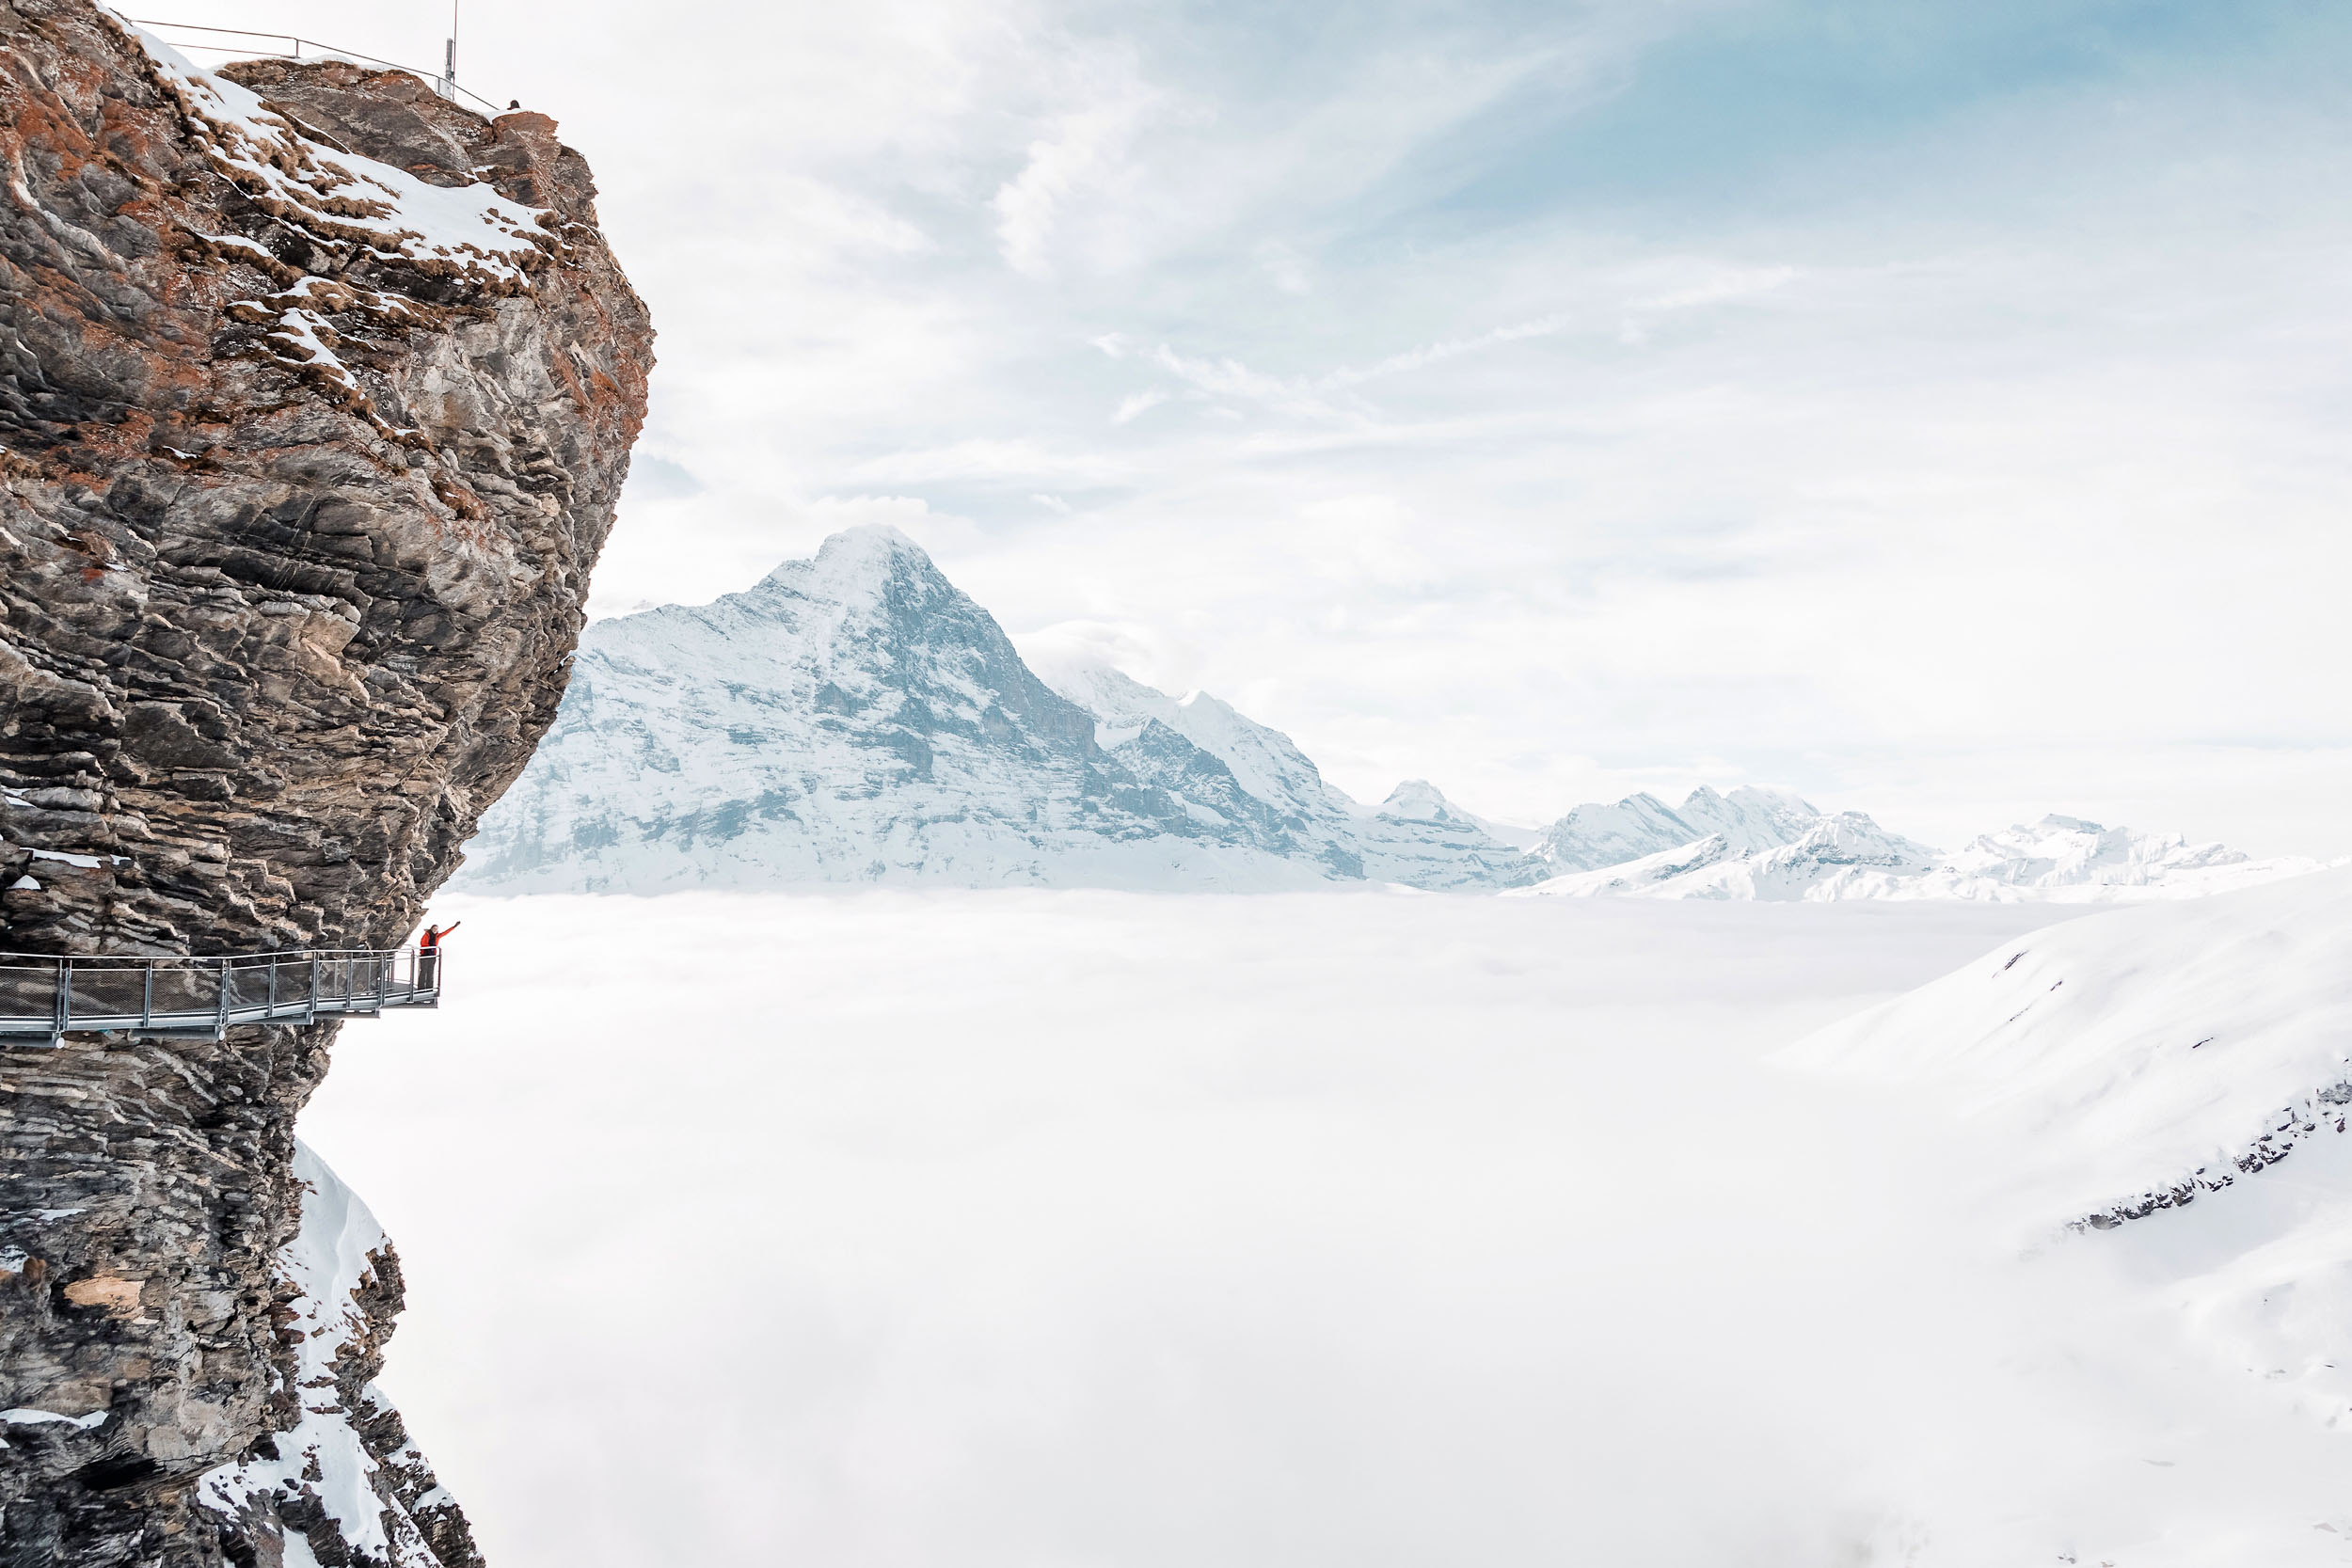 Grindelwald Switzerland - the First Cliff Walk by Tissot